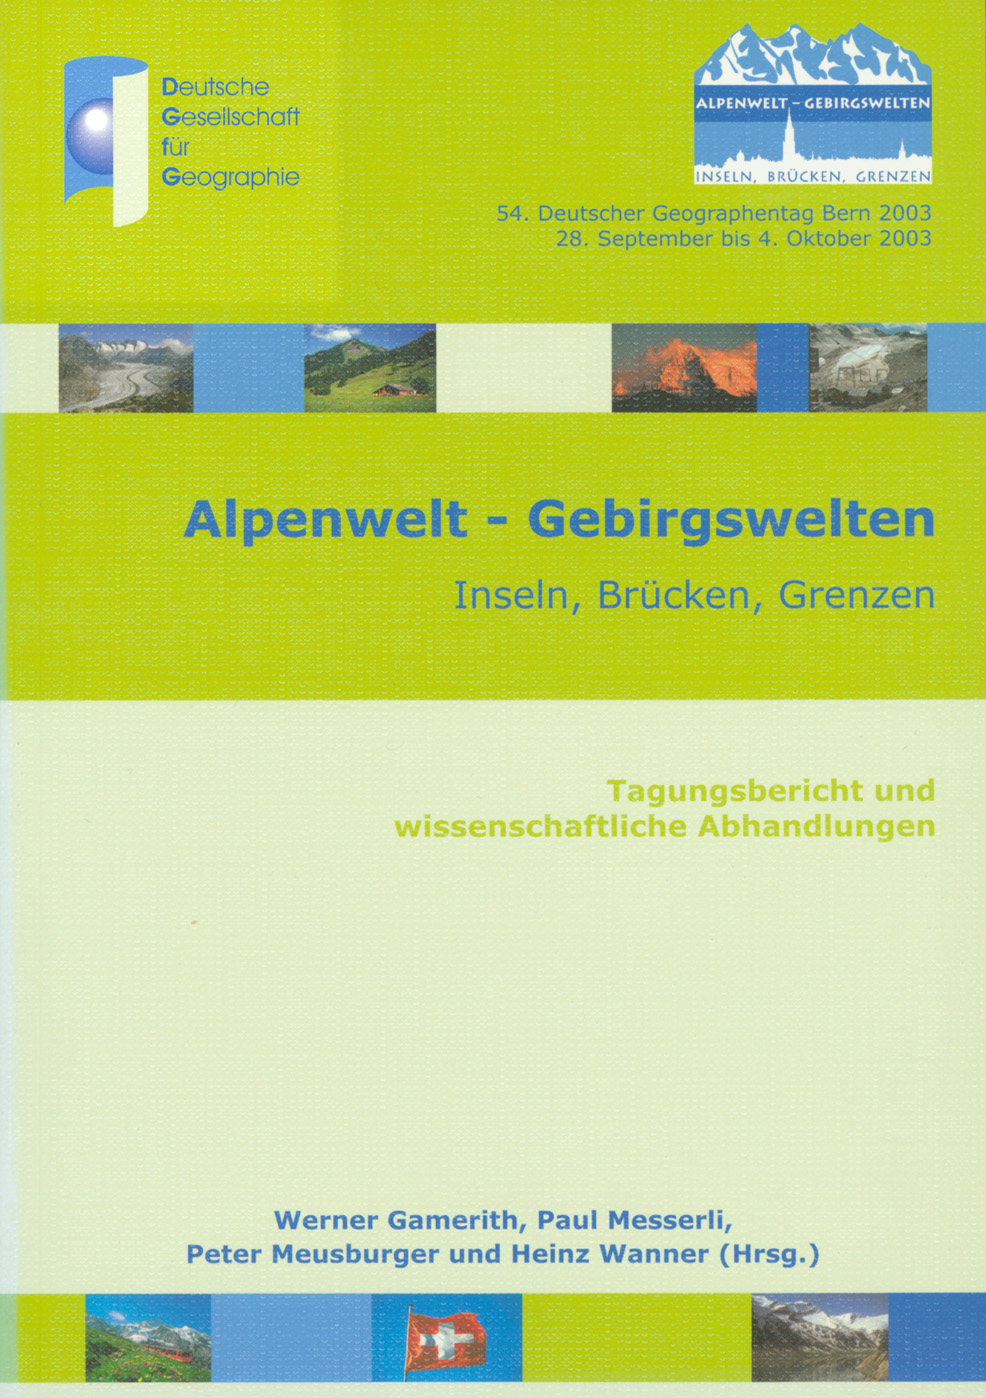 [Translate to Englisch:] Alpenwelt - Gebirgswelten. Inseln, Brücken, Grenzen. Tagungsbericht und wissenschaftliche Abhandlungen